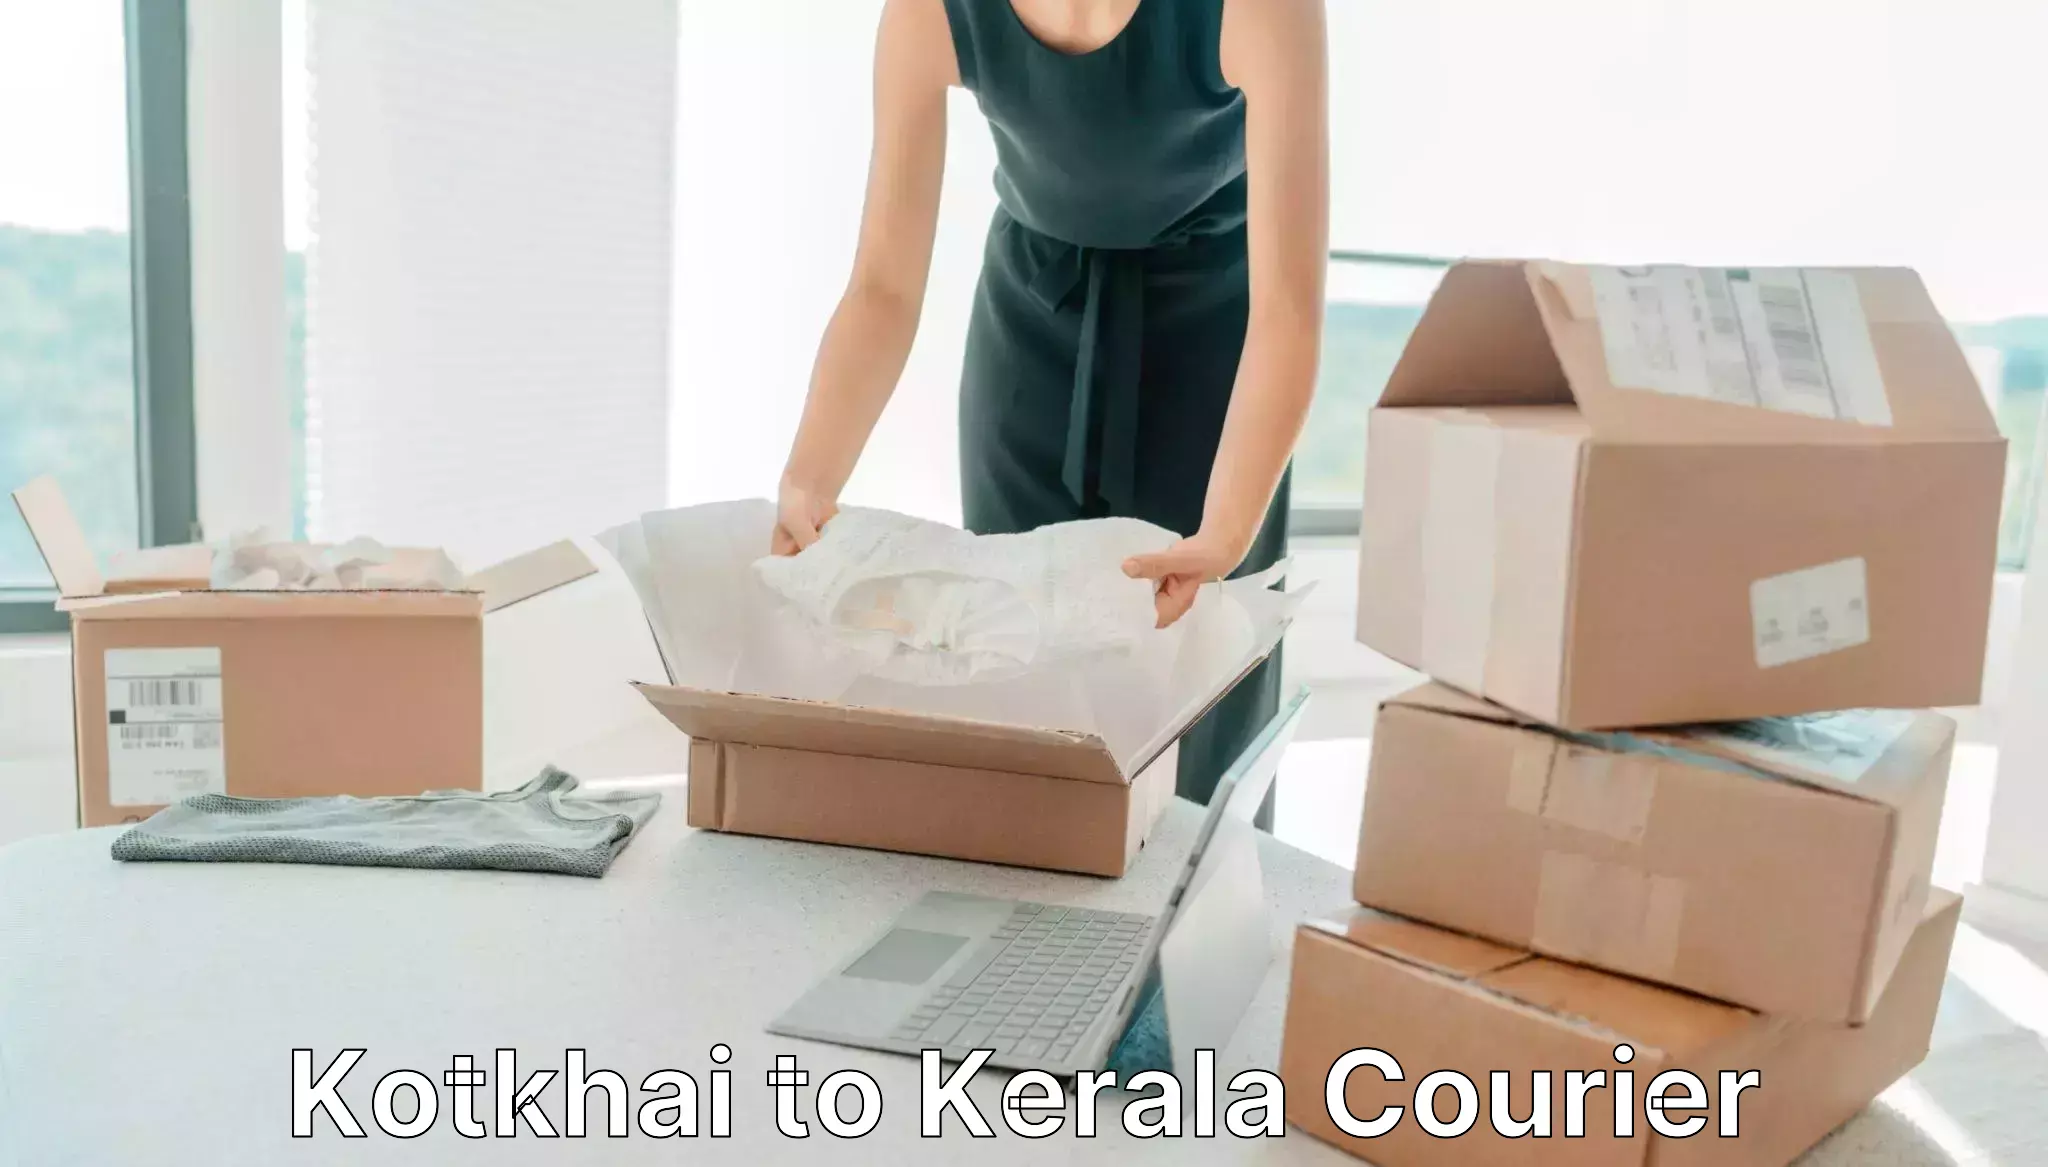 Urban courier service Kotkhai to Kerala